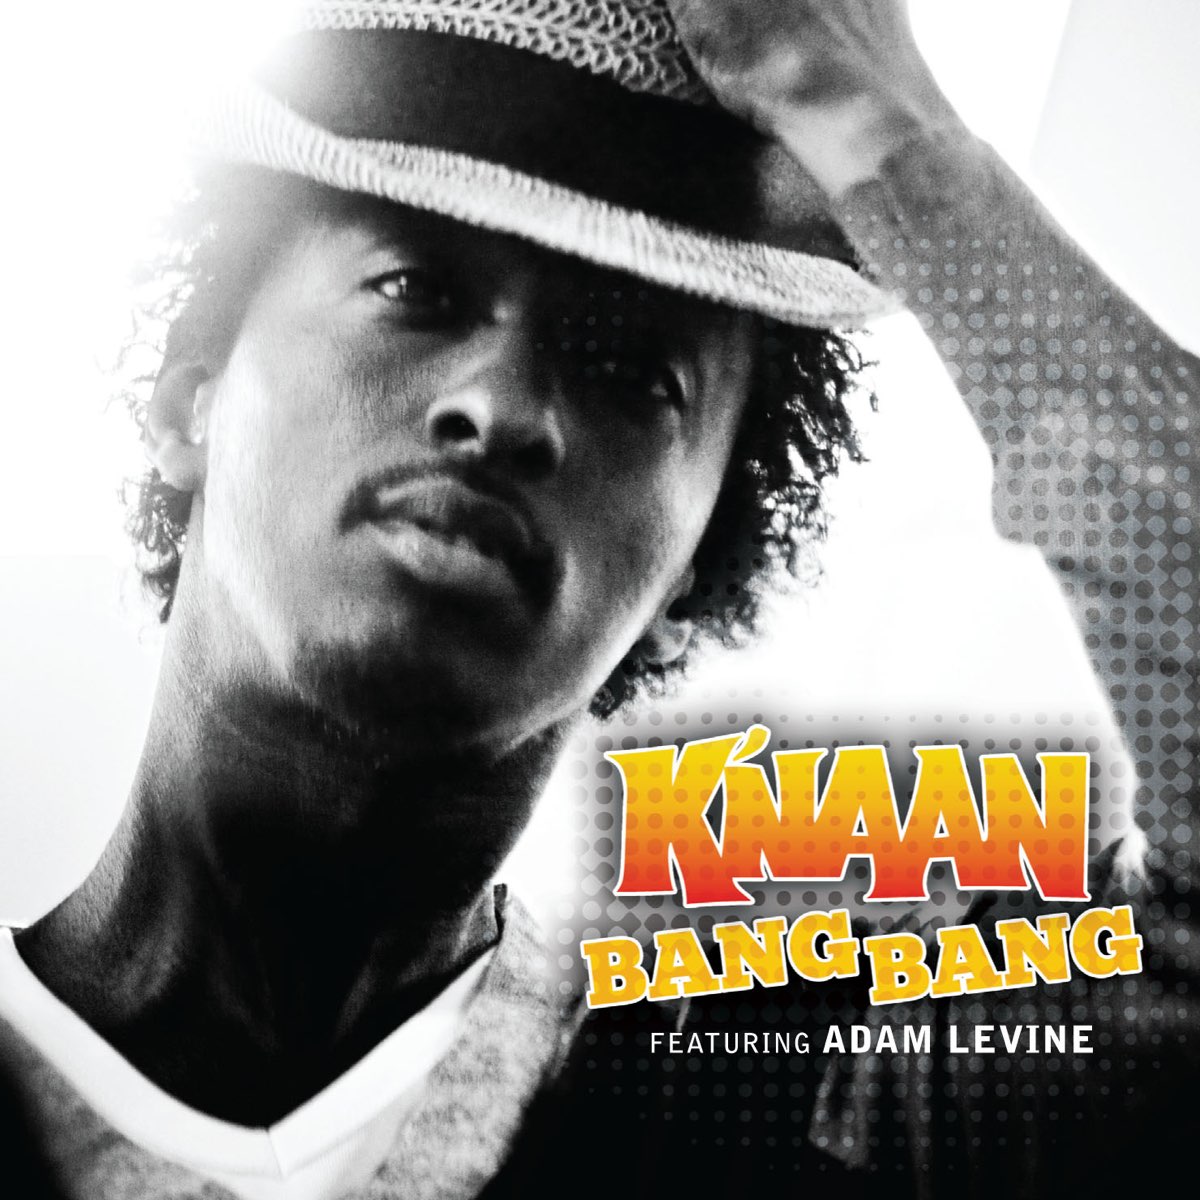 Bang bang face. K'Naan ft. Adam Levine - Bang Bang. Knaan. "K'Naan" && ( исполнитель | группа | музыка | Music | Band | artist ) && (фото | photo). Bang Bang k'Naan обложка.